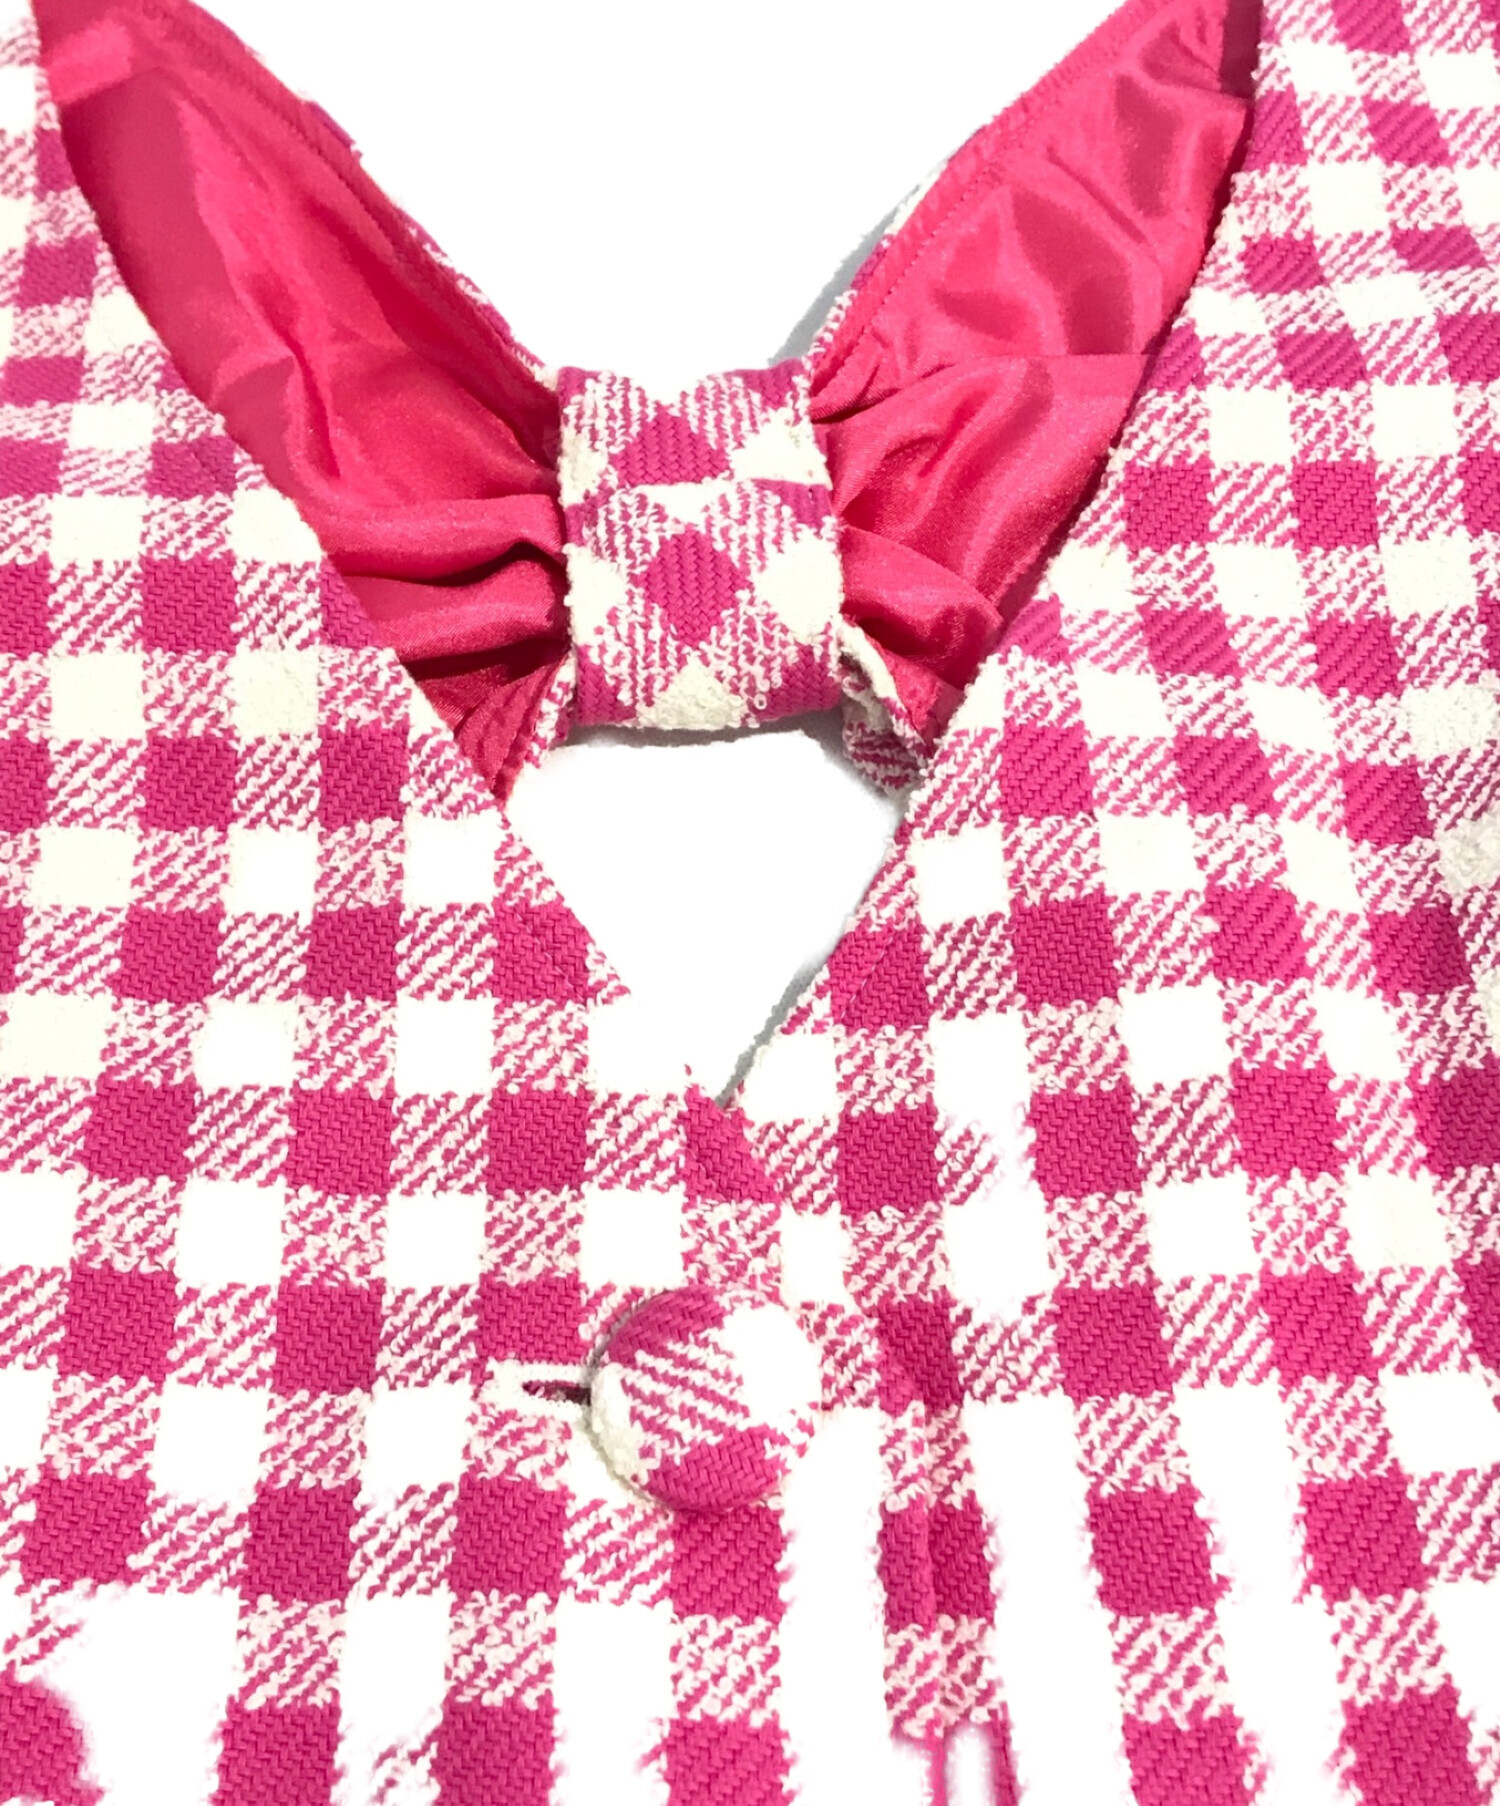 グレースコンチネンタル【GRACECONTINENTAL】ツイードジャンパースカート ピンク 36